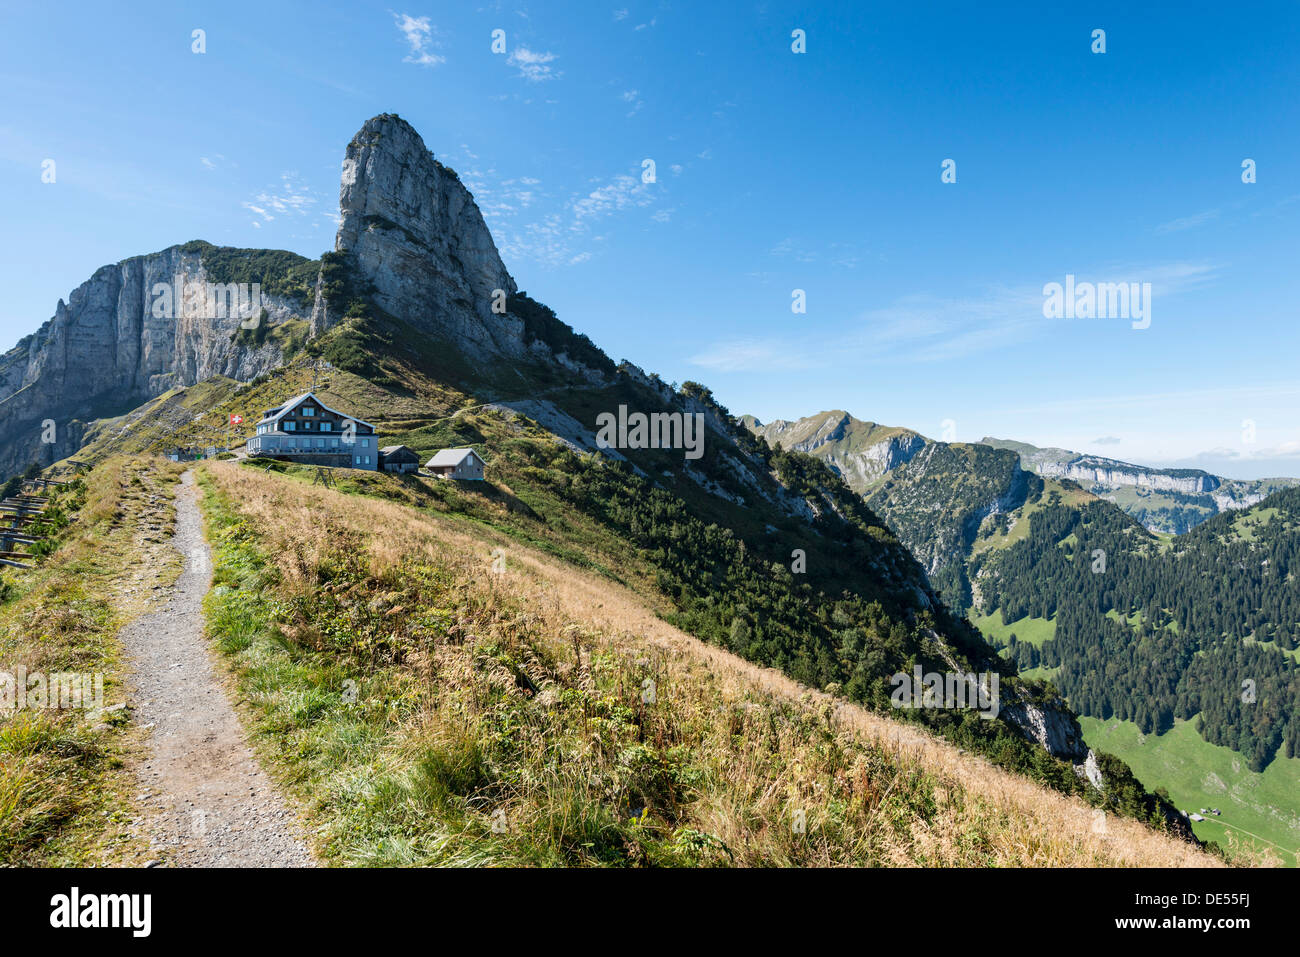 Das Berghaus auf der Staubern, Staubernkanzel Berg, 1860m, auf der  Rückseite, Kanton Appenzell Inner-Rhodos, Schweiz Stockfotografie - Alamy